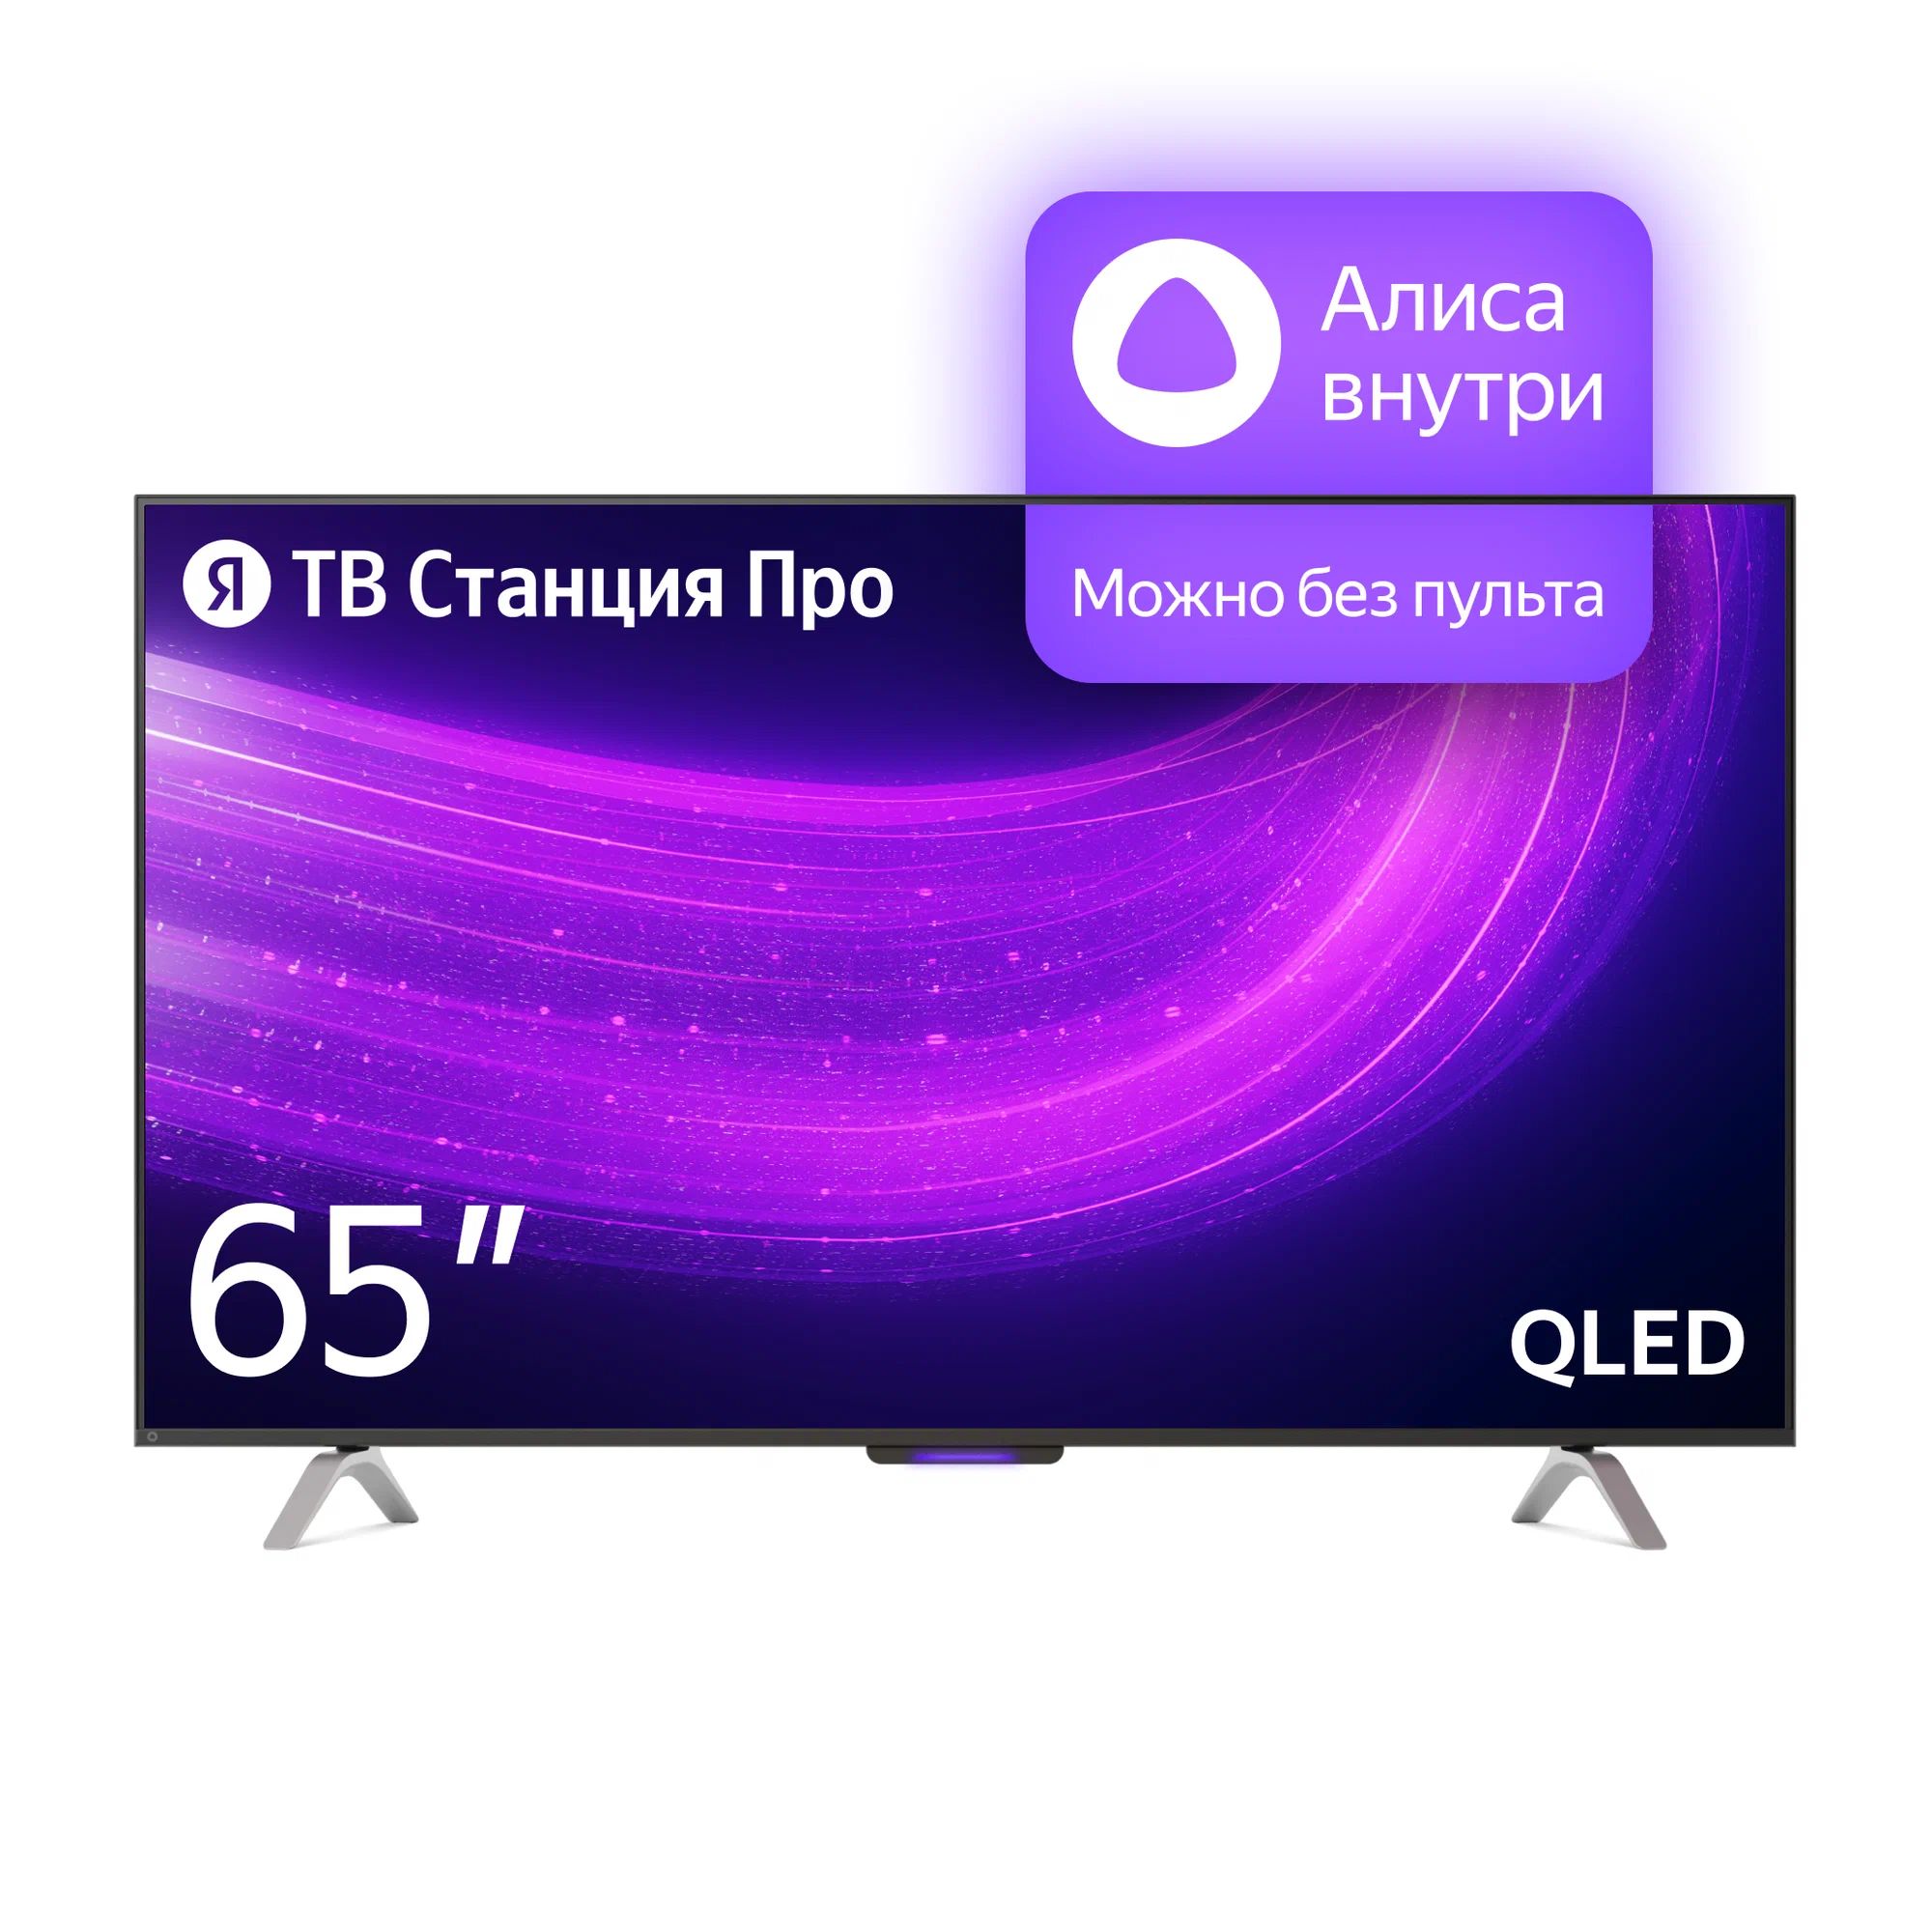 цена Телевизор Яндекс YNDX-00102 PRO Тв станция с Алисой 65